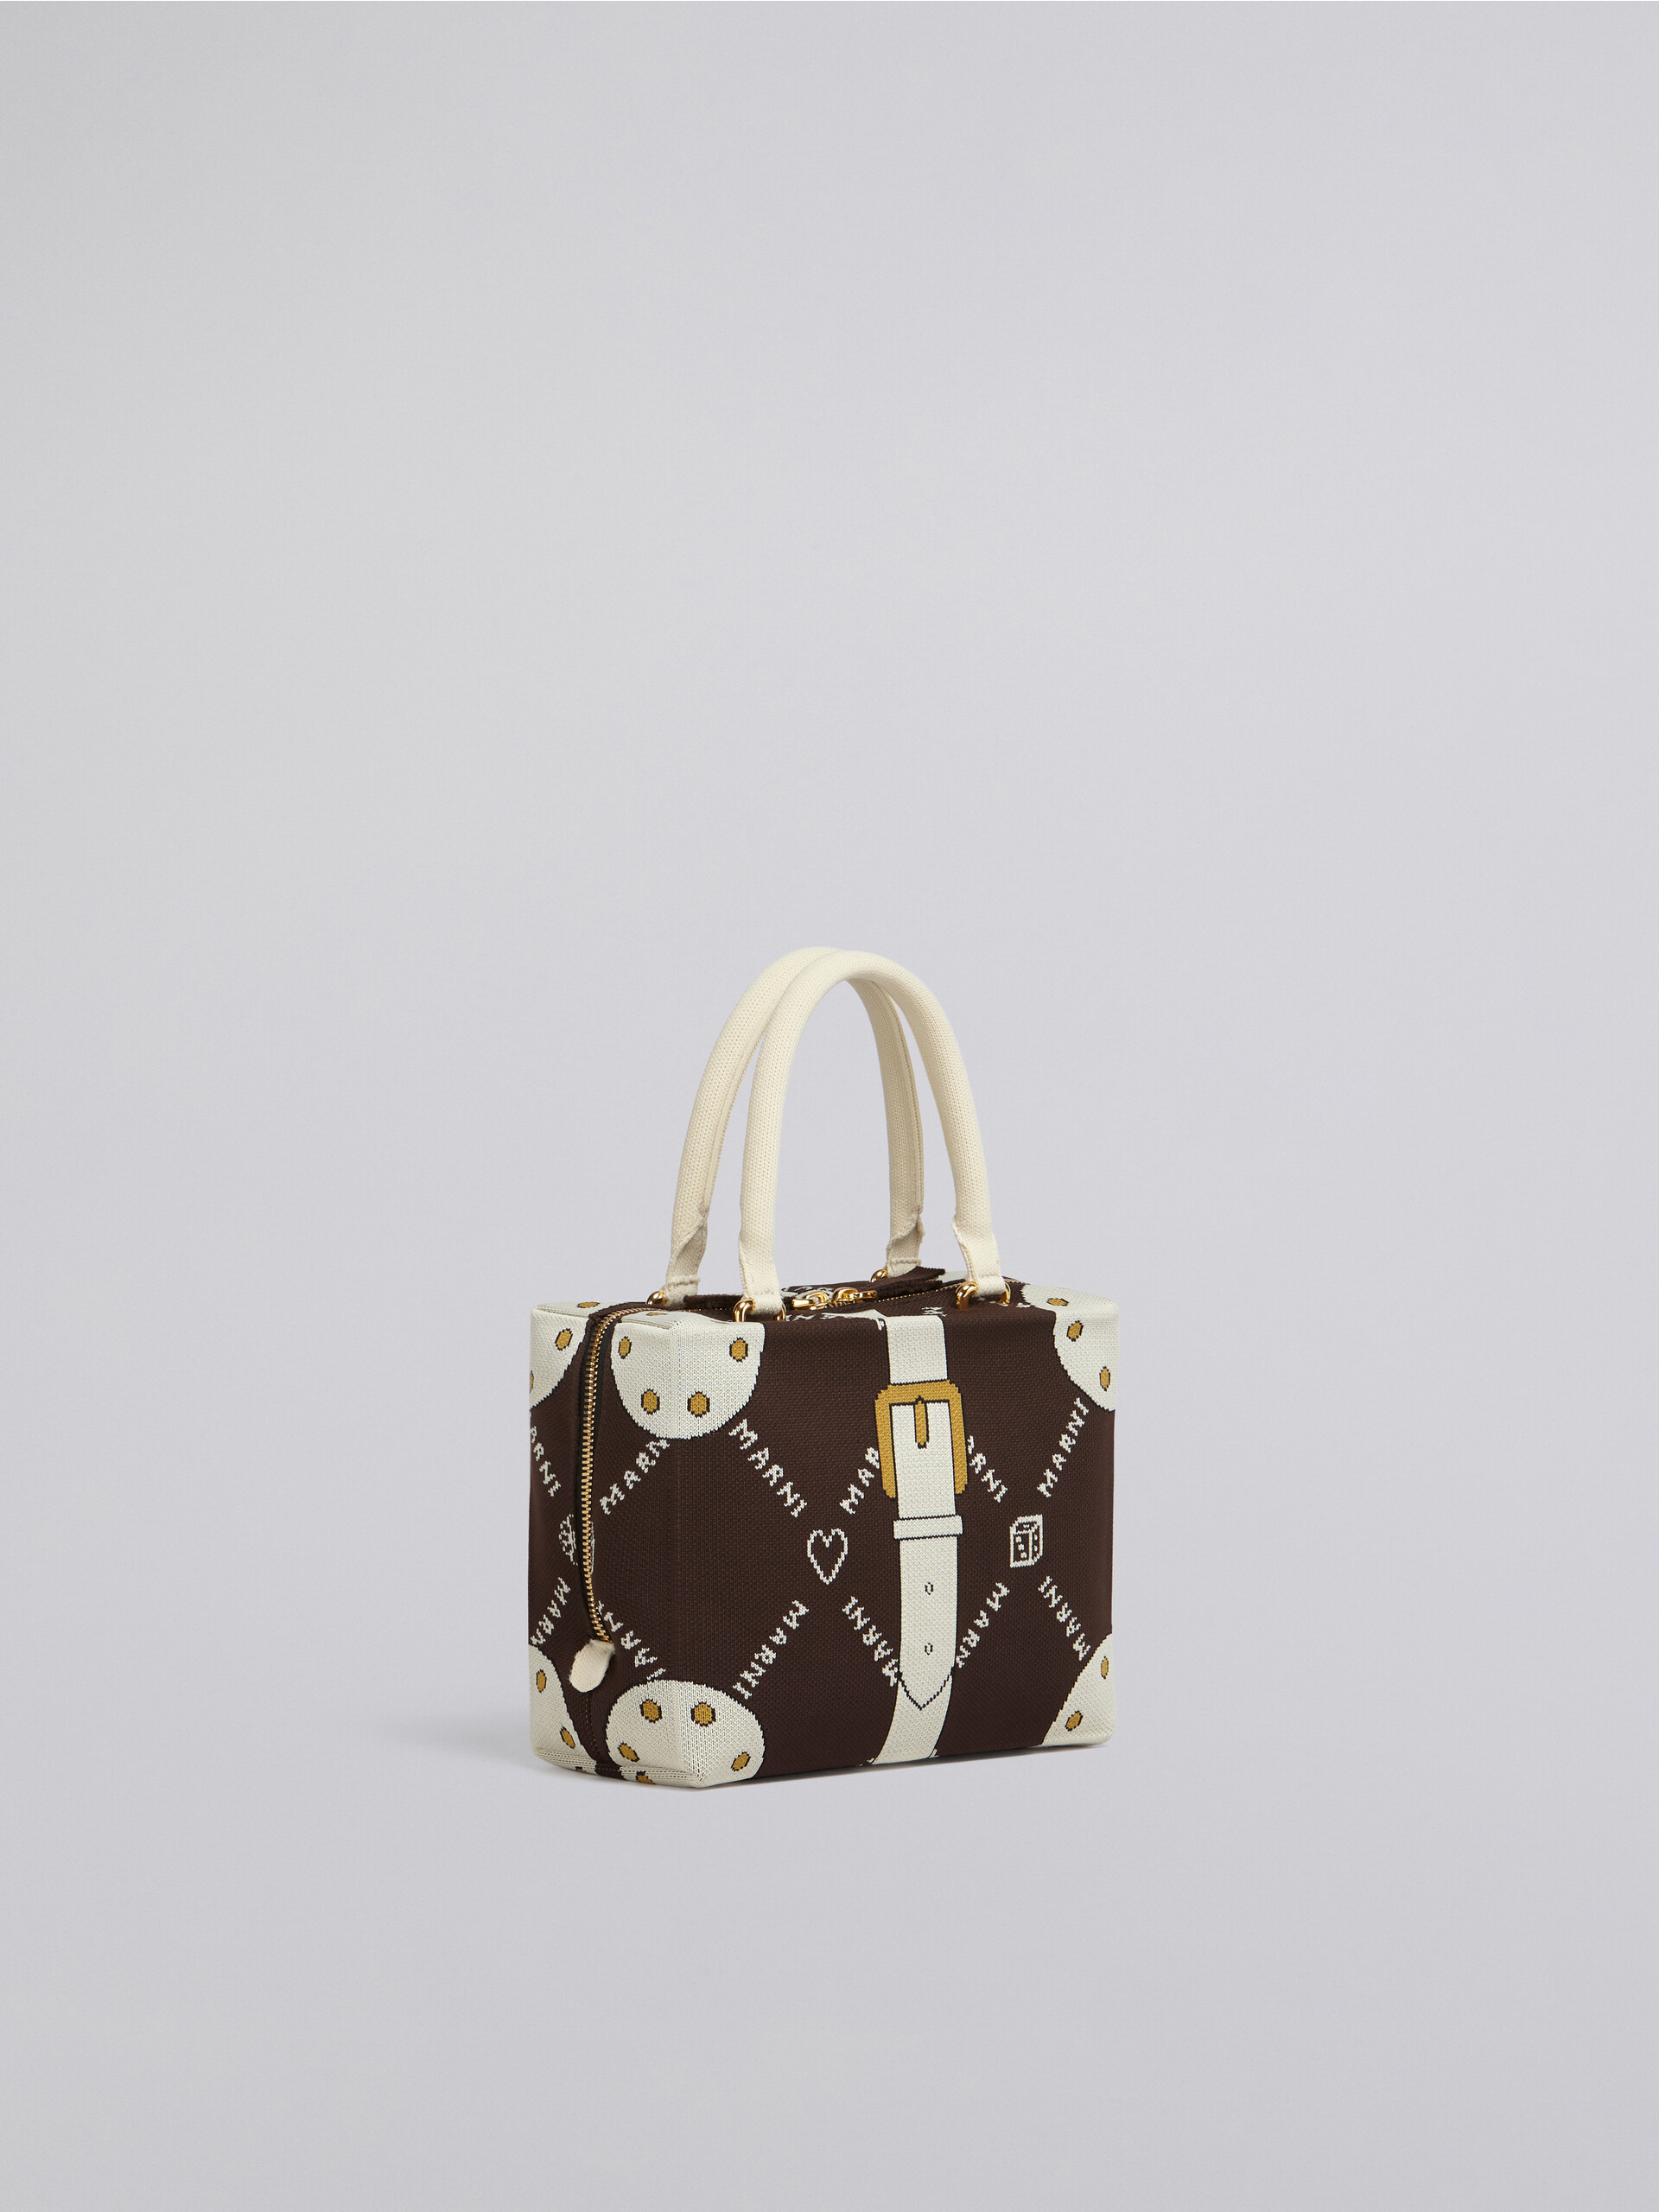 CUBIC bag in brown Marnigram trompe-l'œil jacquard - Handbag - Image 6